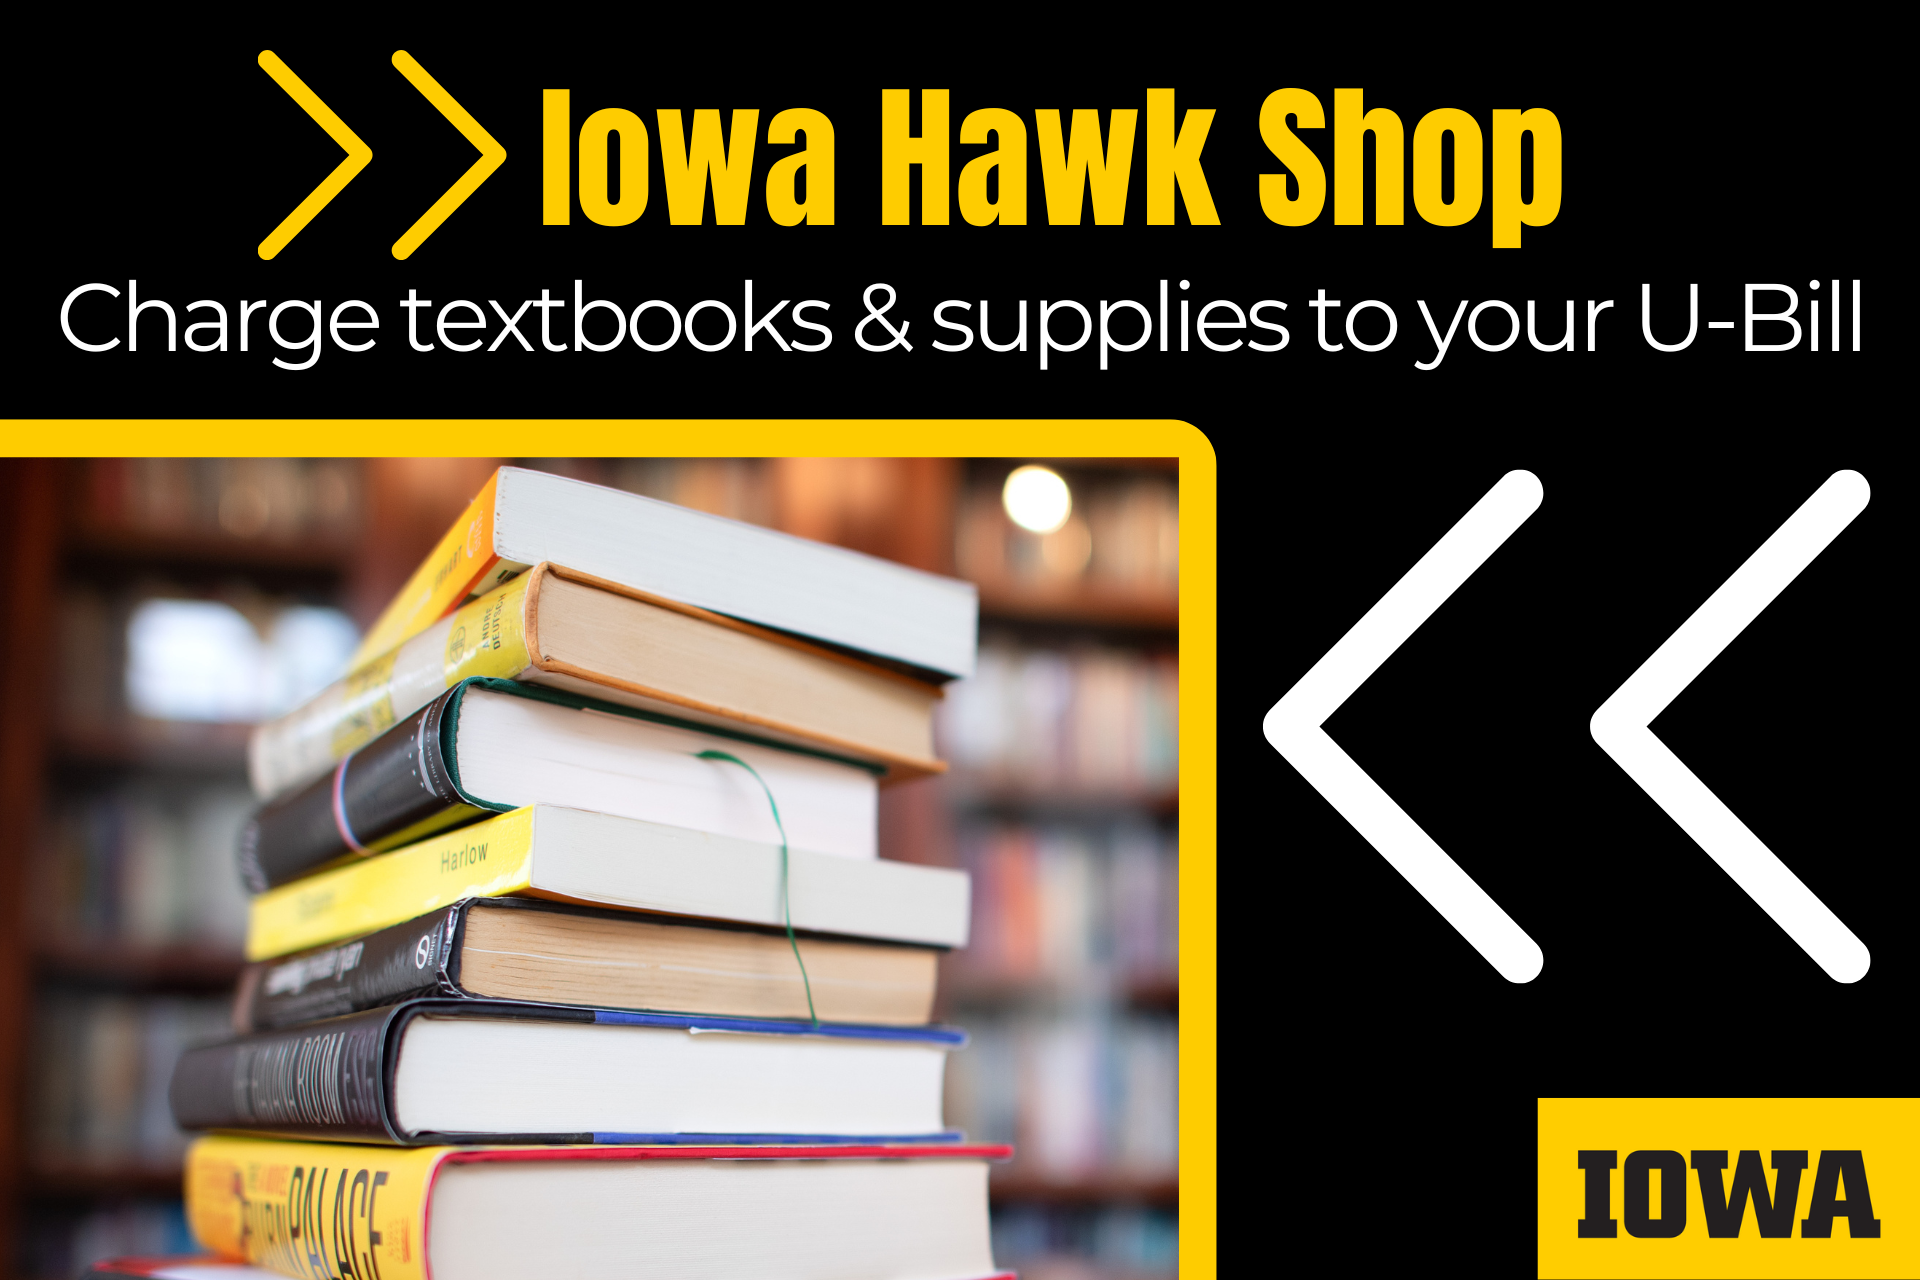 Iowa Hawk Shop